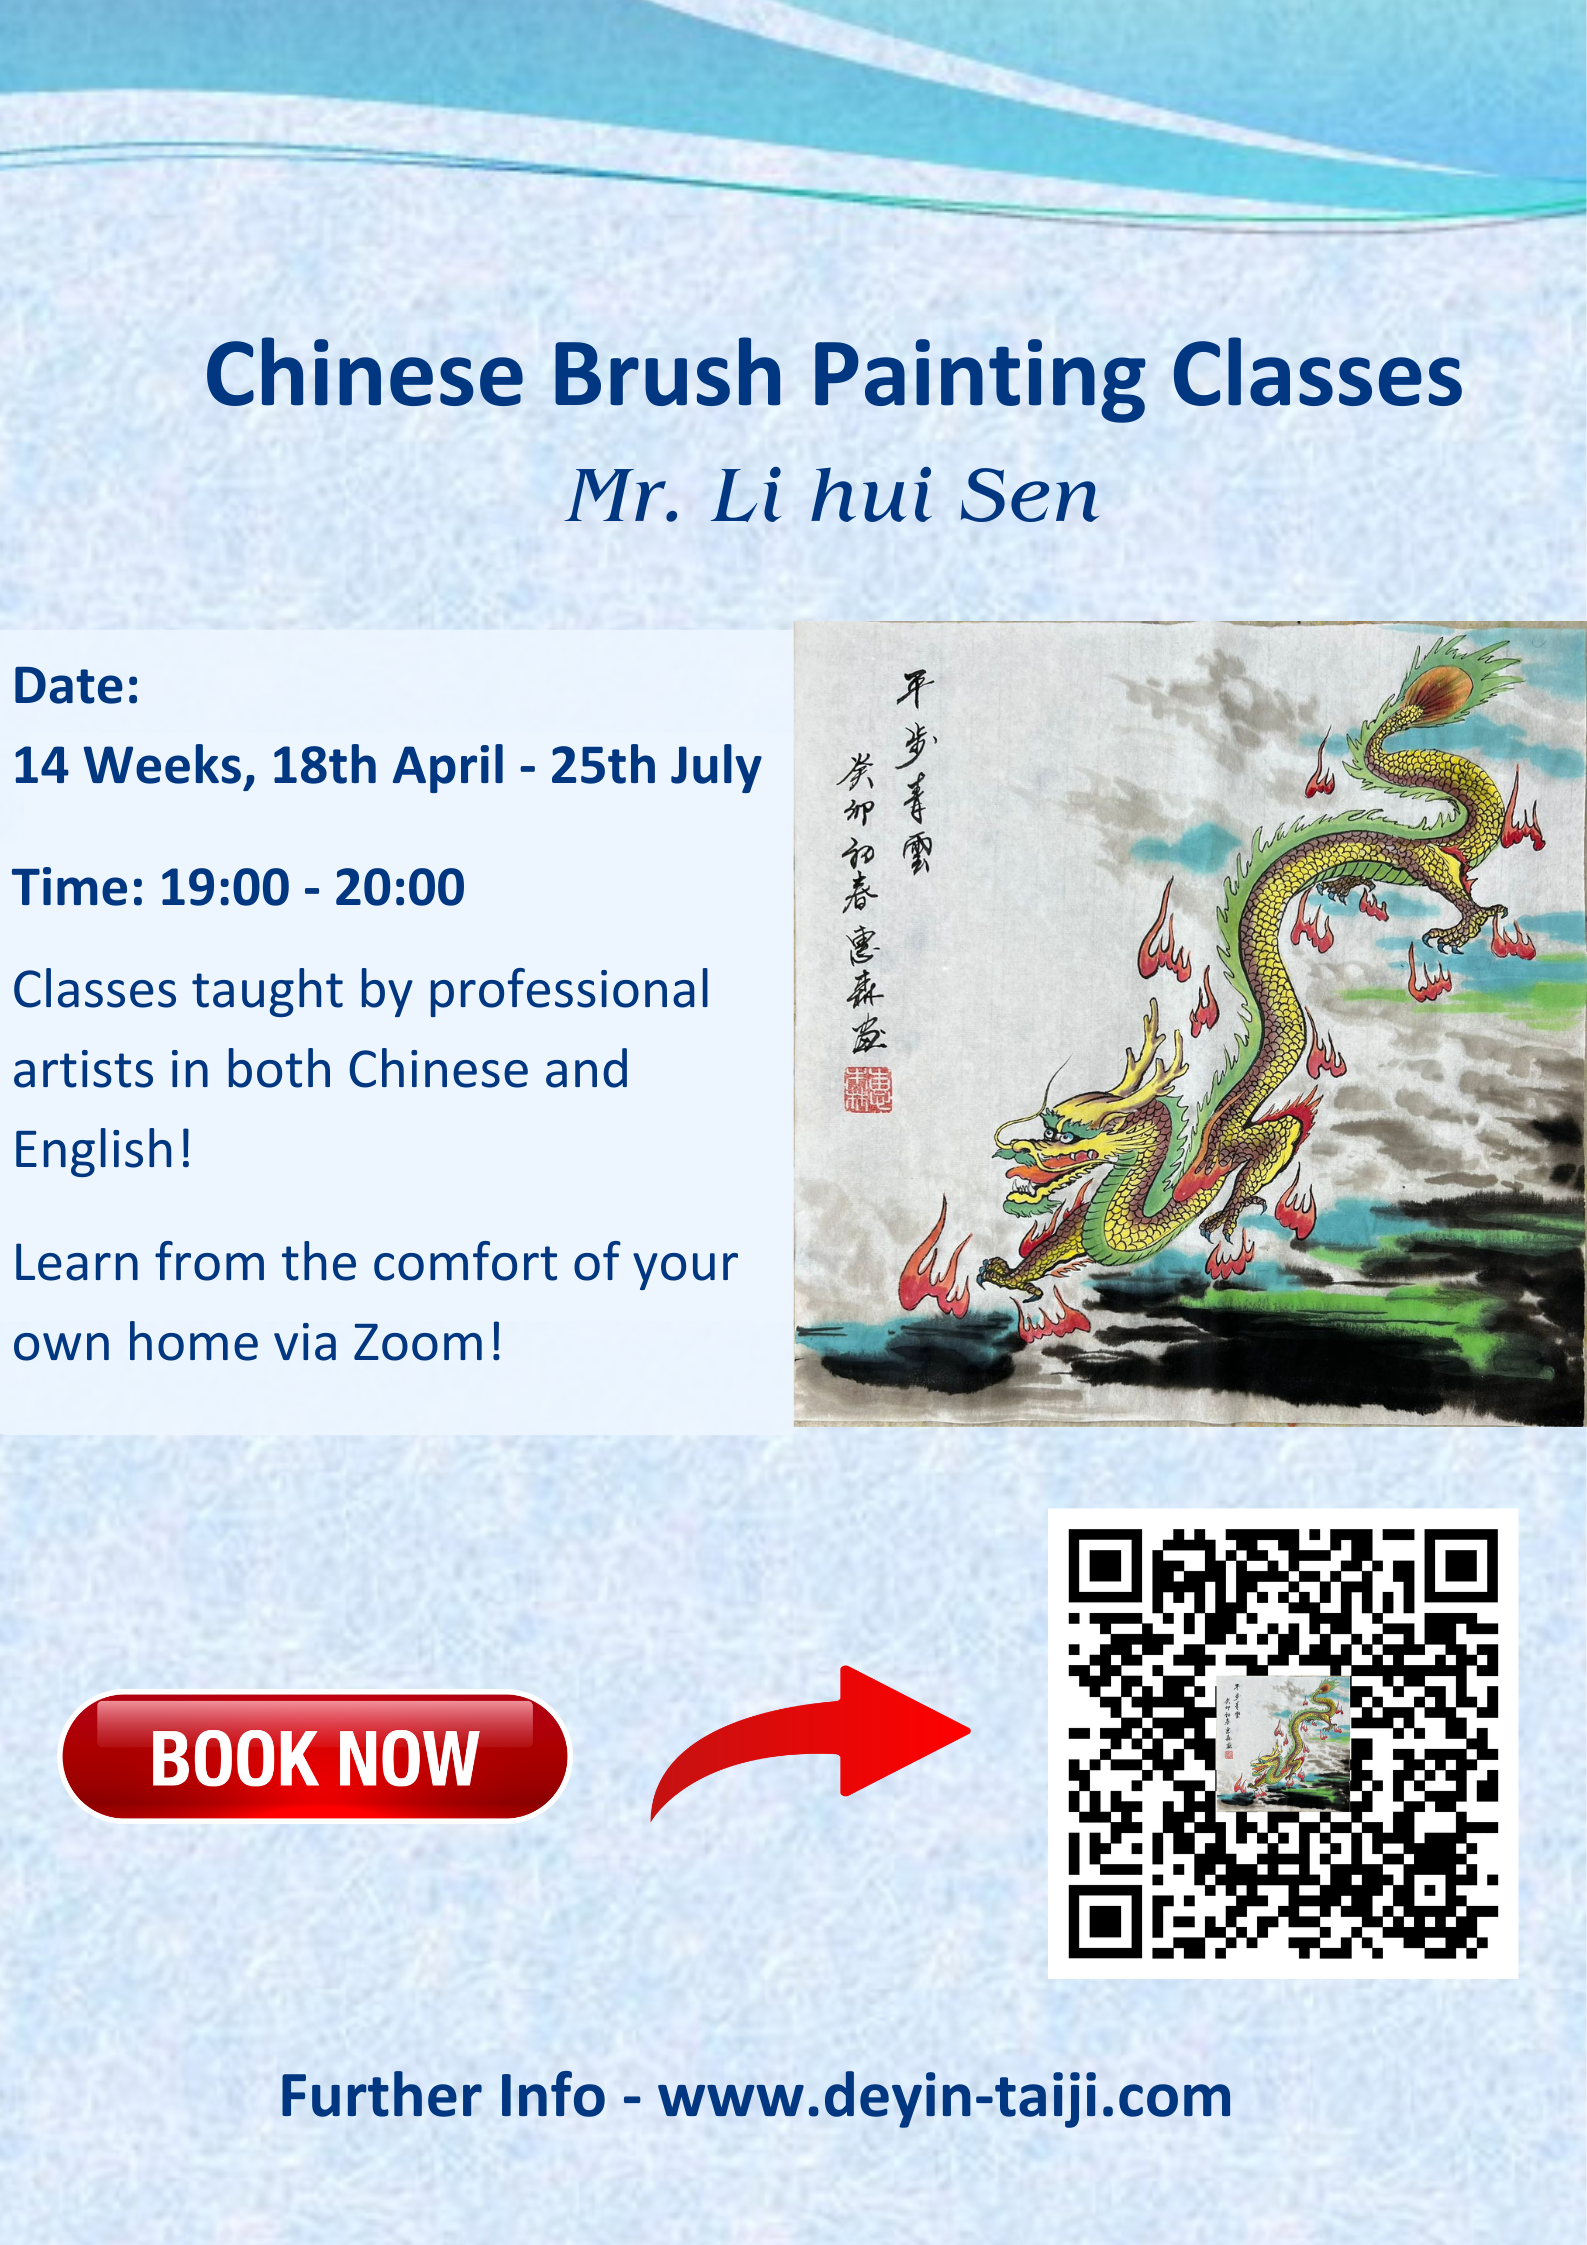 Chinese Brush Painting Classes